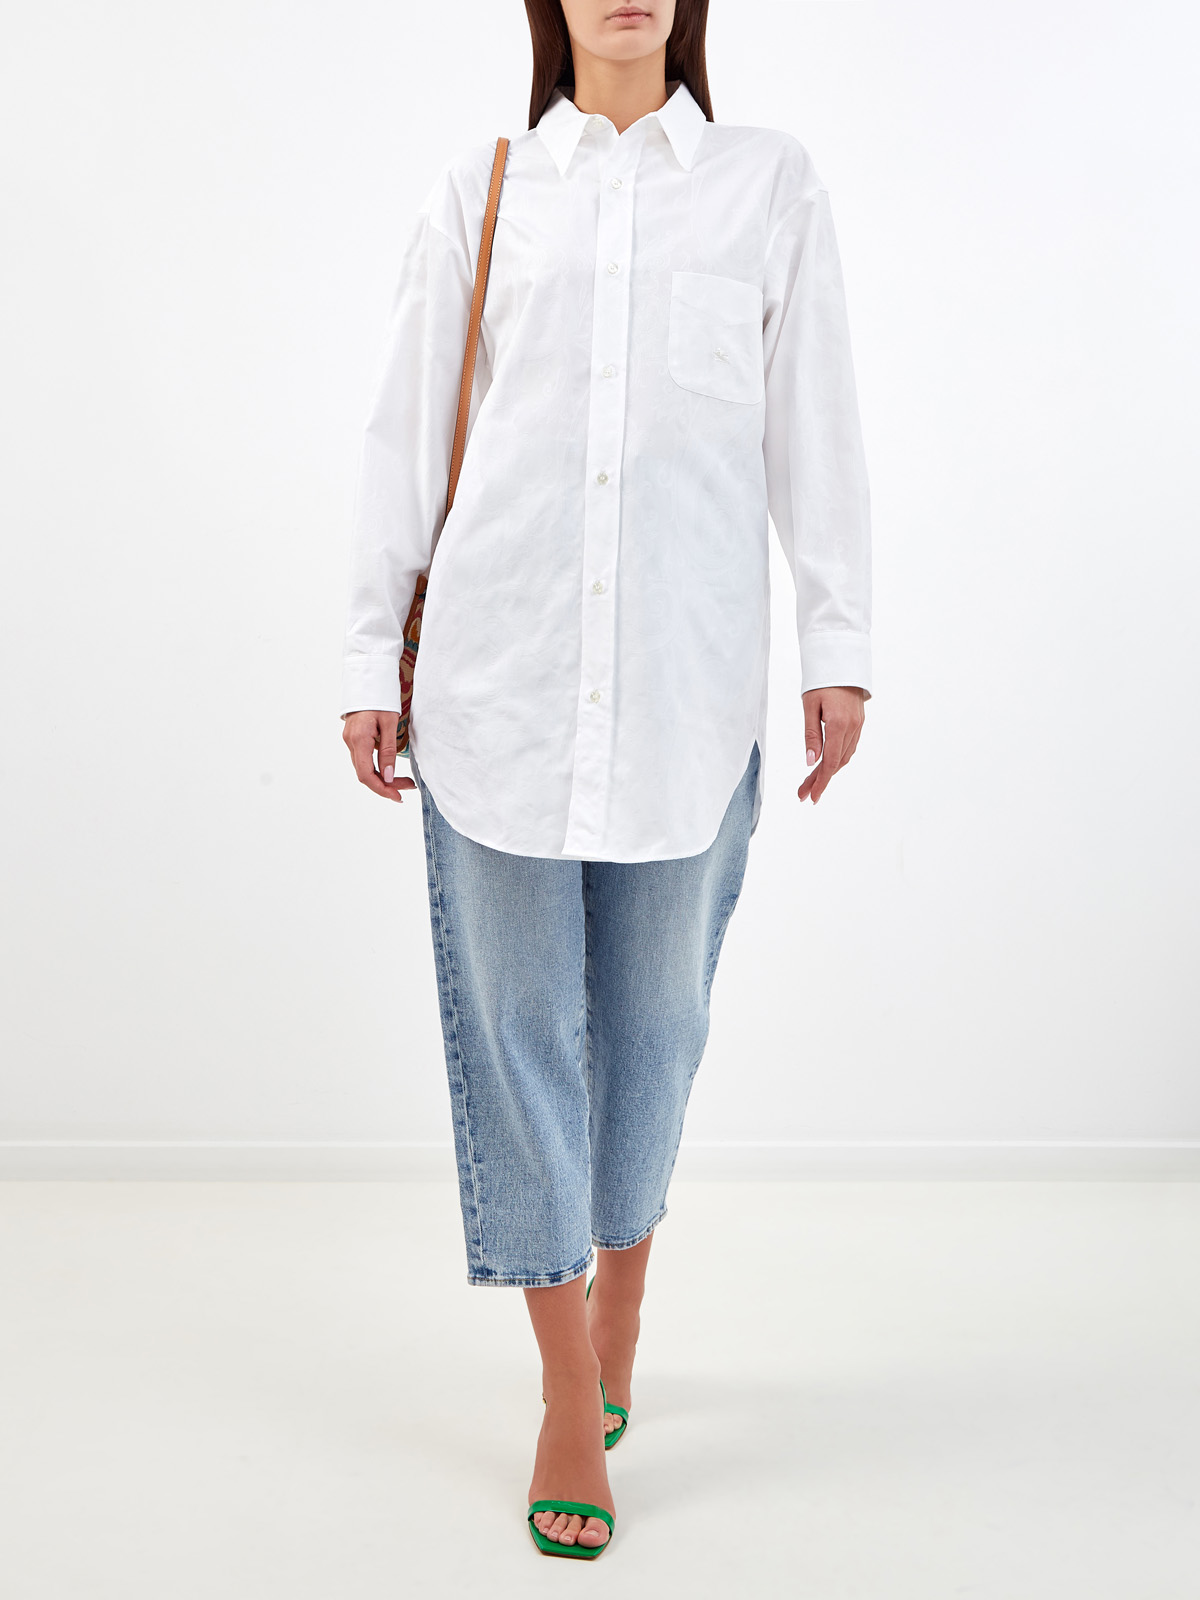 Длинная рубашка с жаккардовым узором и вышивкой ETRO, цвет белый, размер 40;42;38 - фото 2